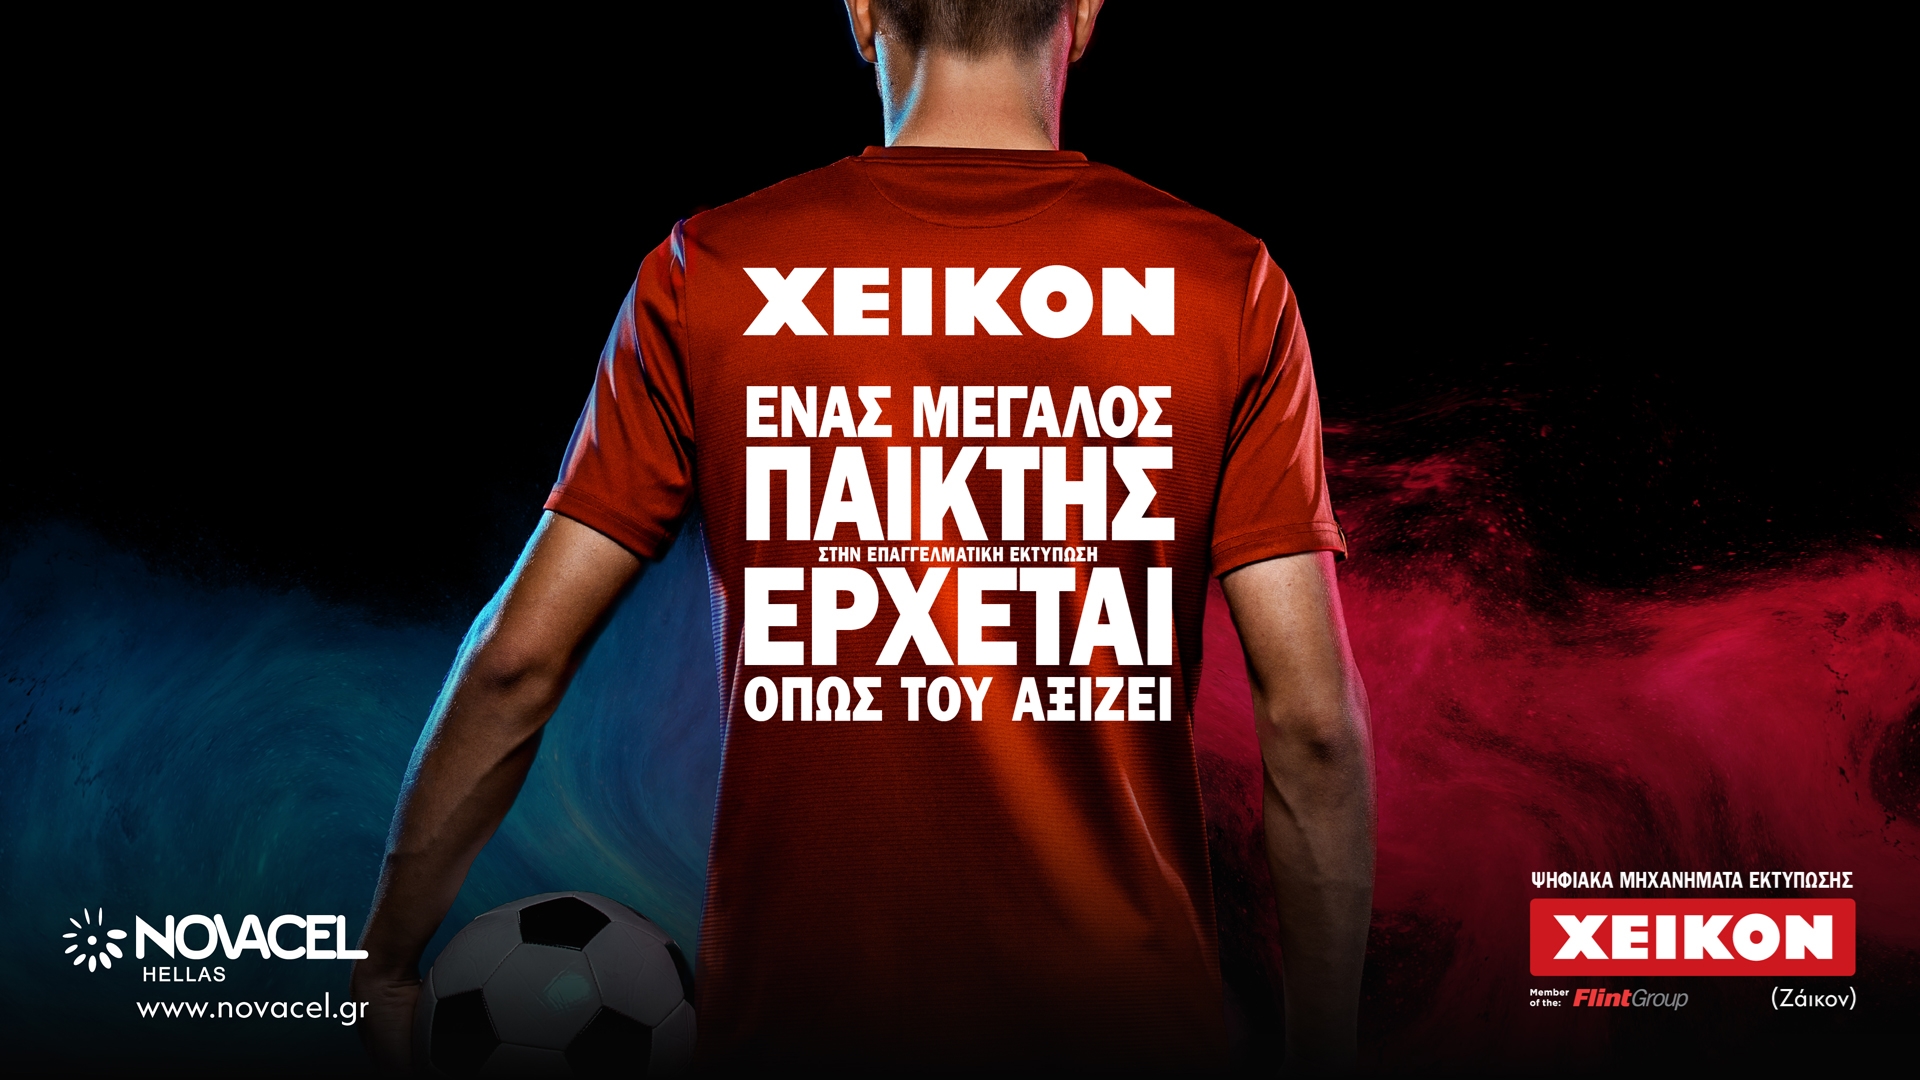 Δελτίο Τύπου: Xeikon - Ένας παγκόσμιος παίκτης στον κλάδο των ψηφιακών μηχανημάτων εκτύπωσης, έρχεται όπως του αξίζει!